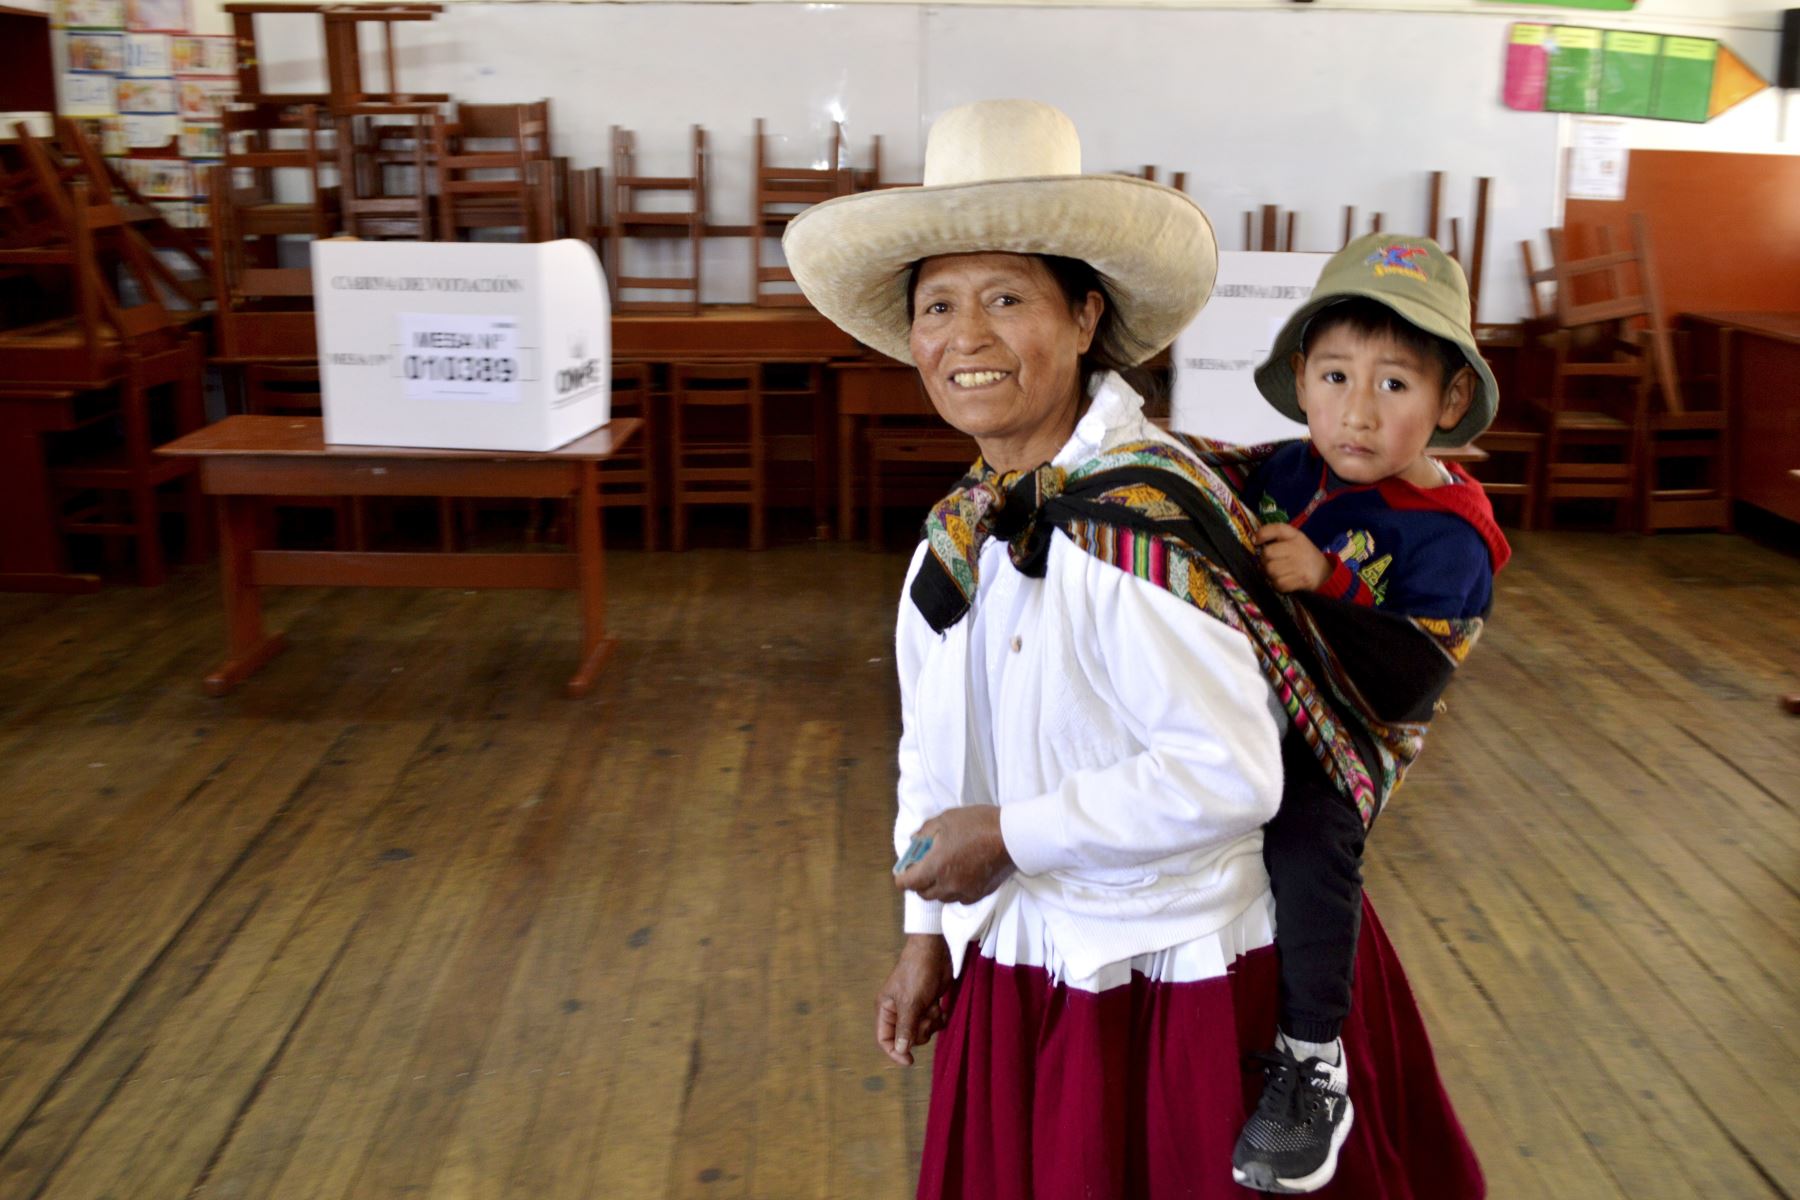 Desarrollo de elecciones regionales en Cajamarca.

Foto: ANDINA/Eduard Lozano